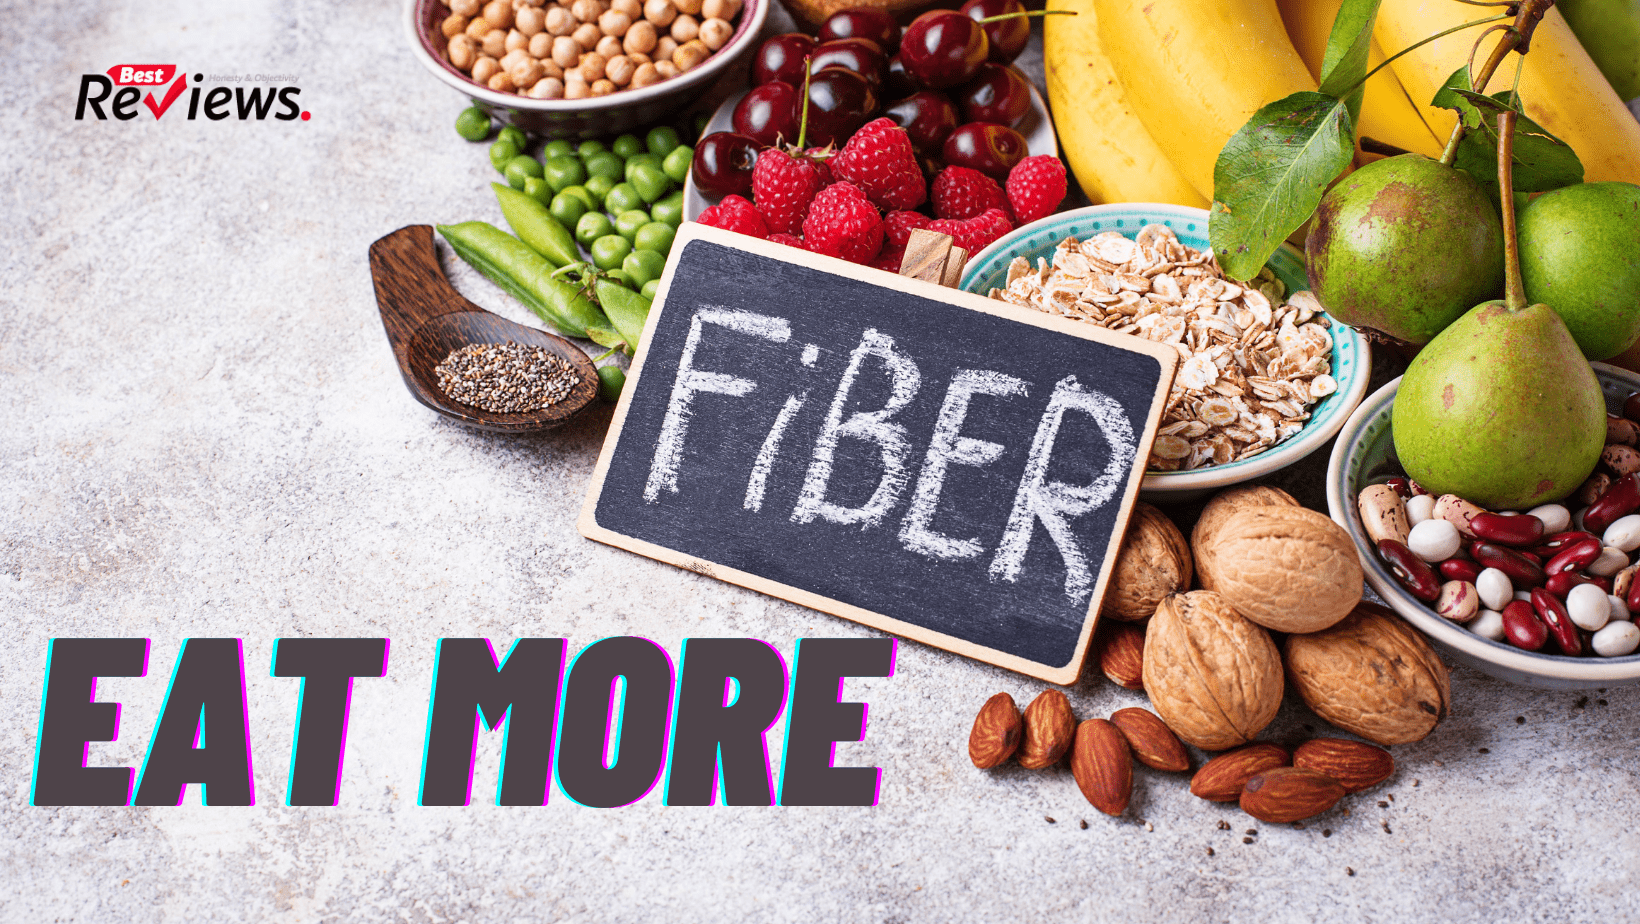 Eat more fiber